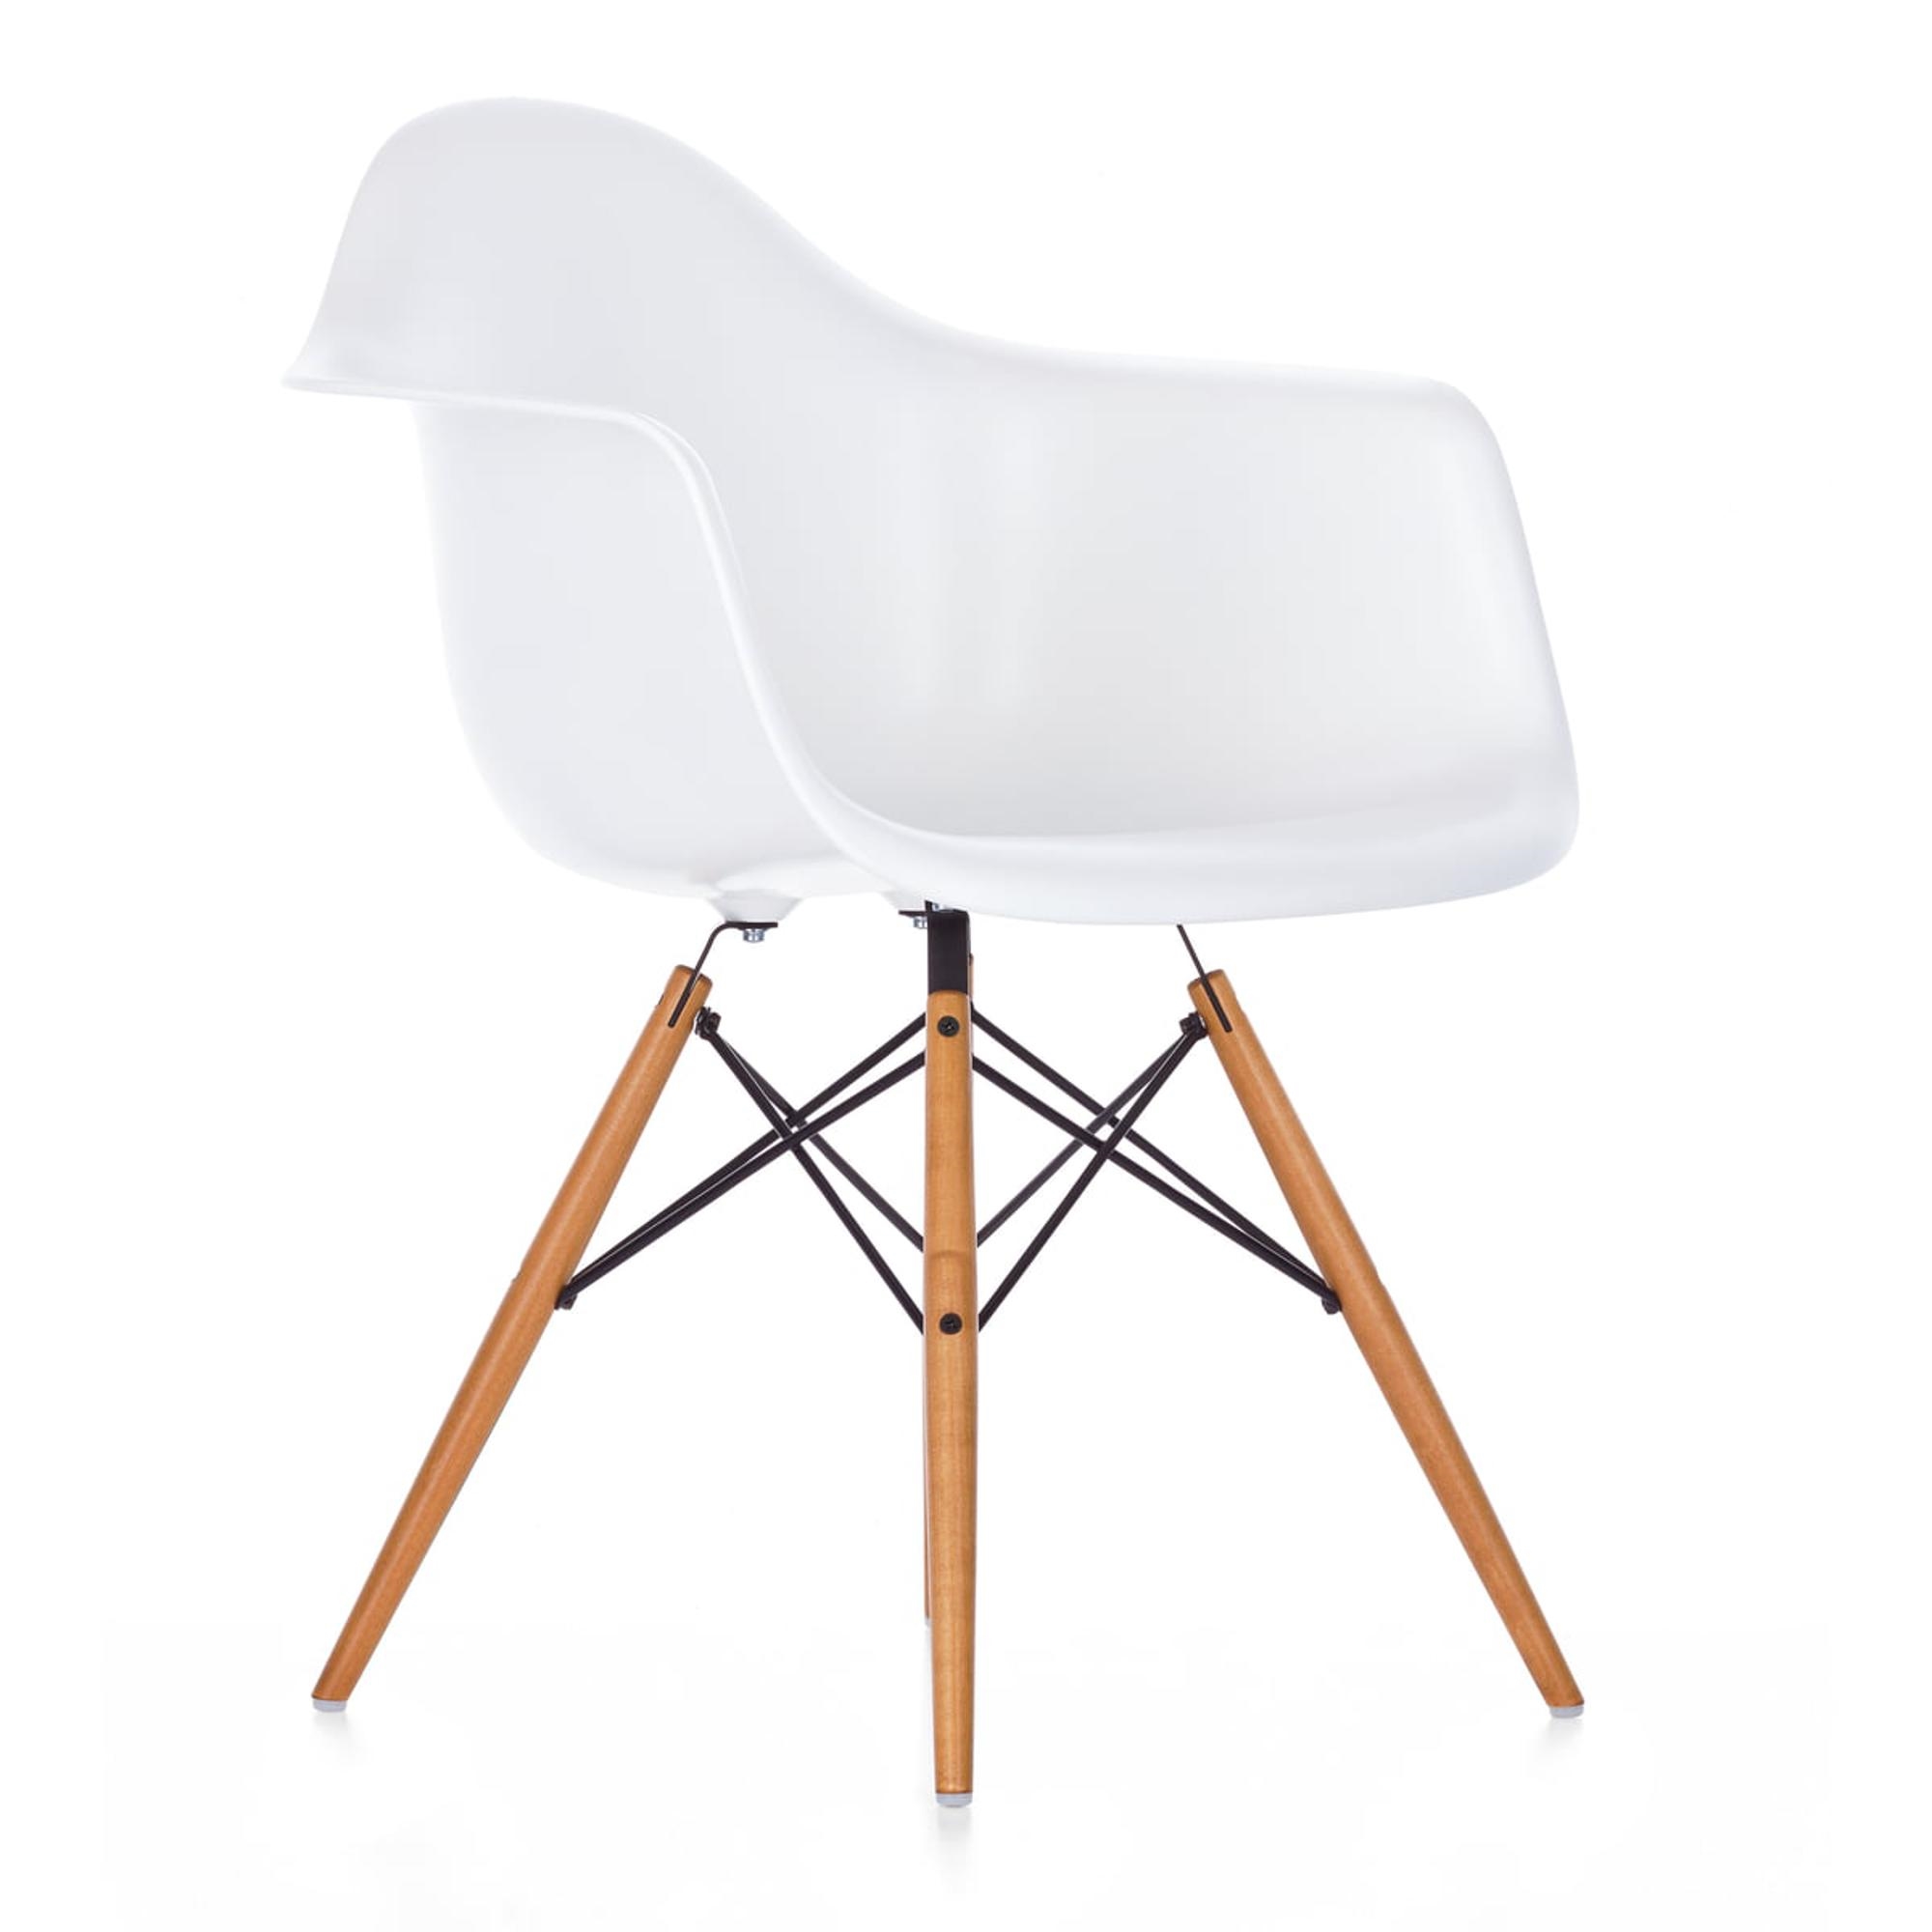 Rimpelingen Verspreiding Dubbelzinnig Vitra Eames Plastic DAW Dining Chair Weiß/ Goldahorn - Kauf hier!